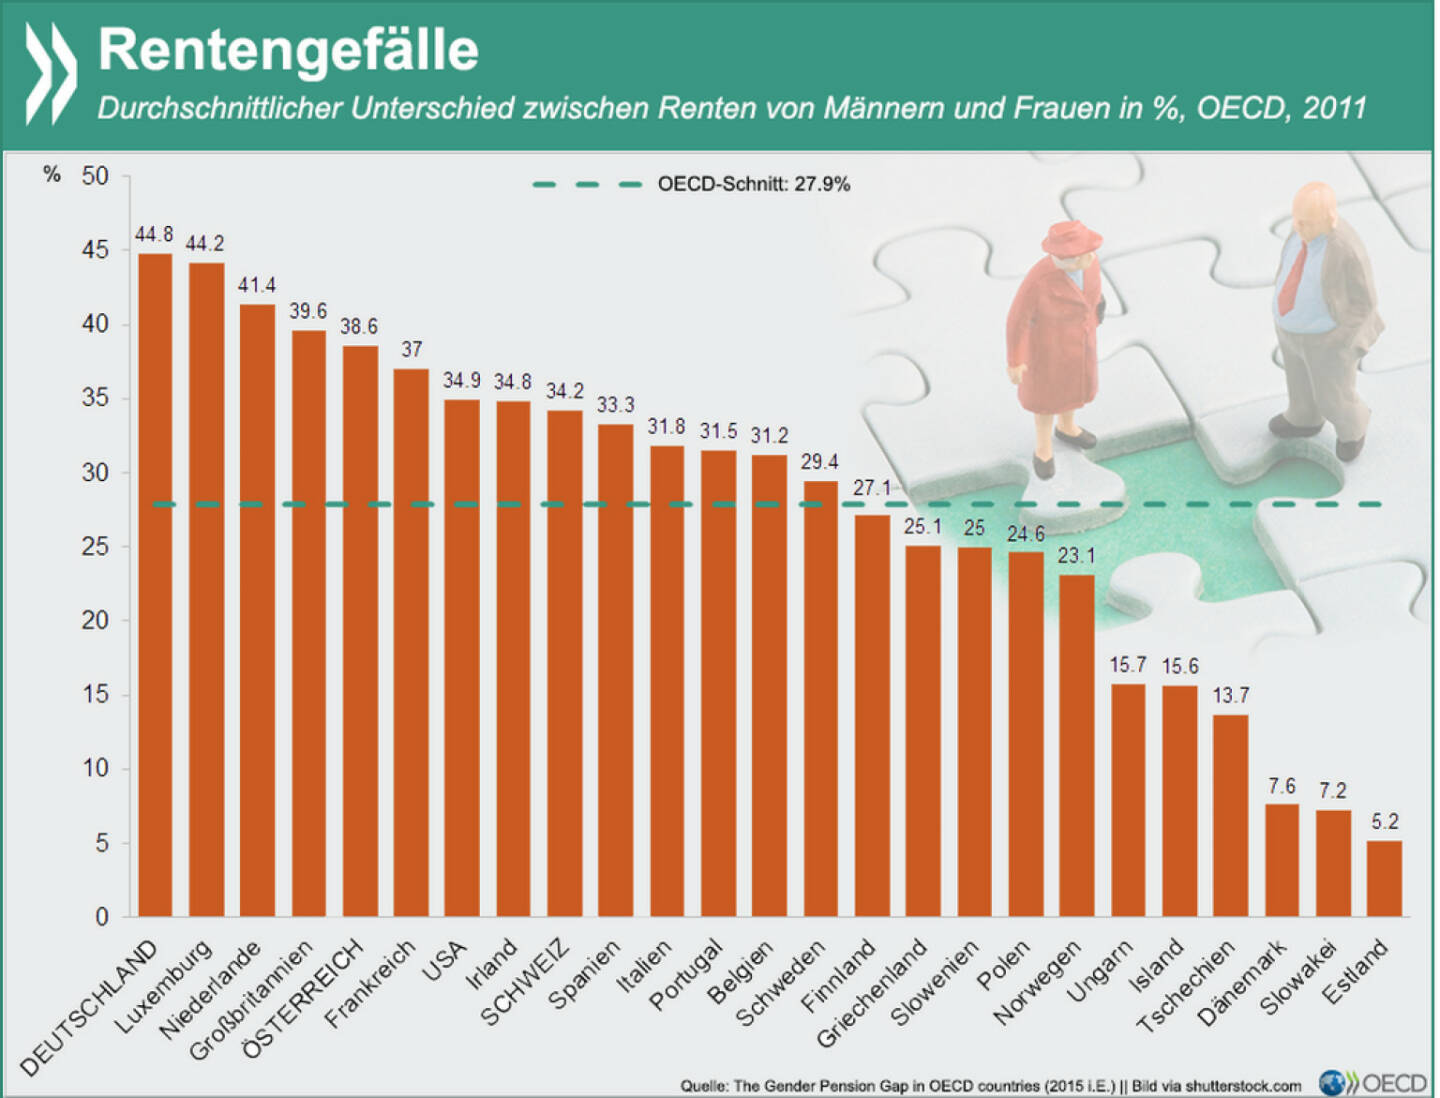 Mind the Gap! Die Renten für Frauen liegen im Durchschnitt europäischer OECD-Länder und der USA 28 Prozent niedriger als jene der Männer. Am größten ist der Unterschied in Deutschland - hier beträgt die Rentenlücke zwischen den Geschlechtern ganze 45 Prozent. ‪#‎Frauentag‬
Mehr Daten zu den Geschlechterunterschieden in Beschäftigungsfragen findet Ihr unter: http://bit.ly/1DZQjEY